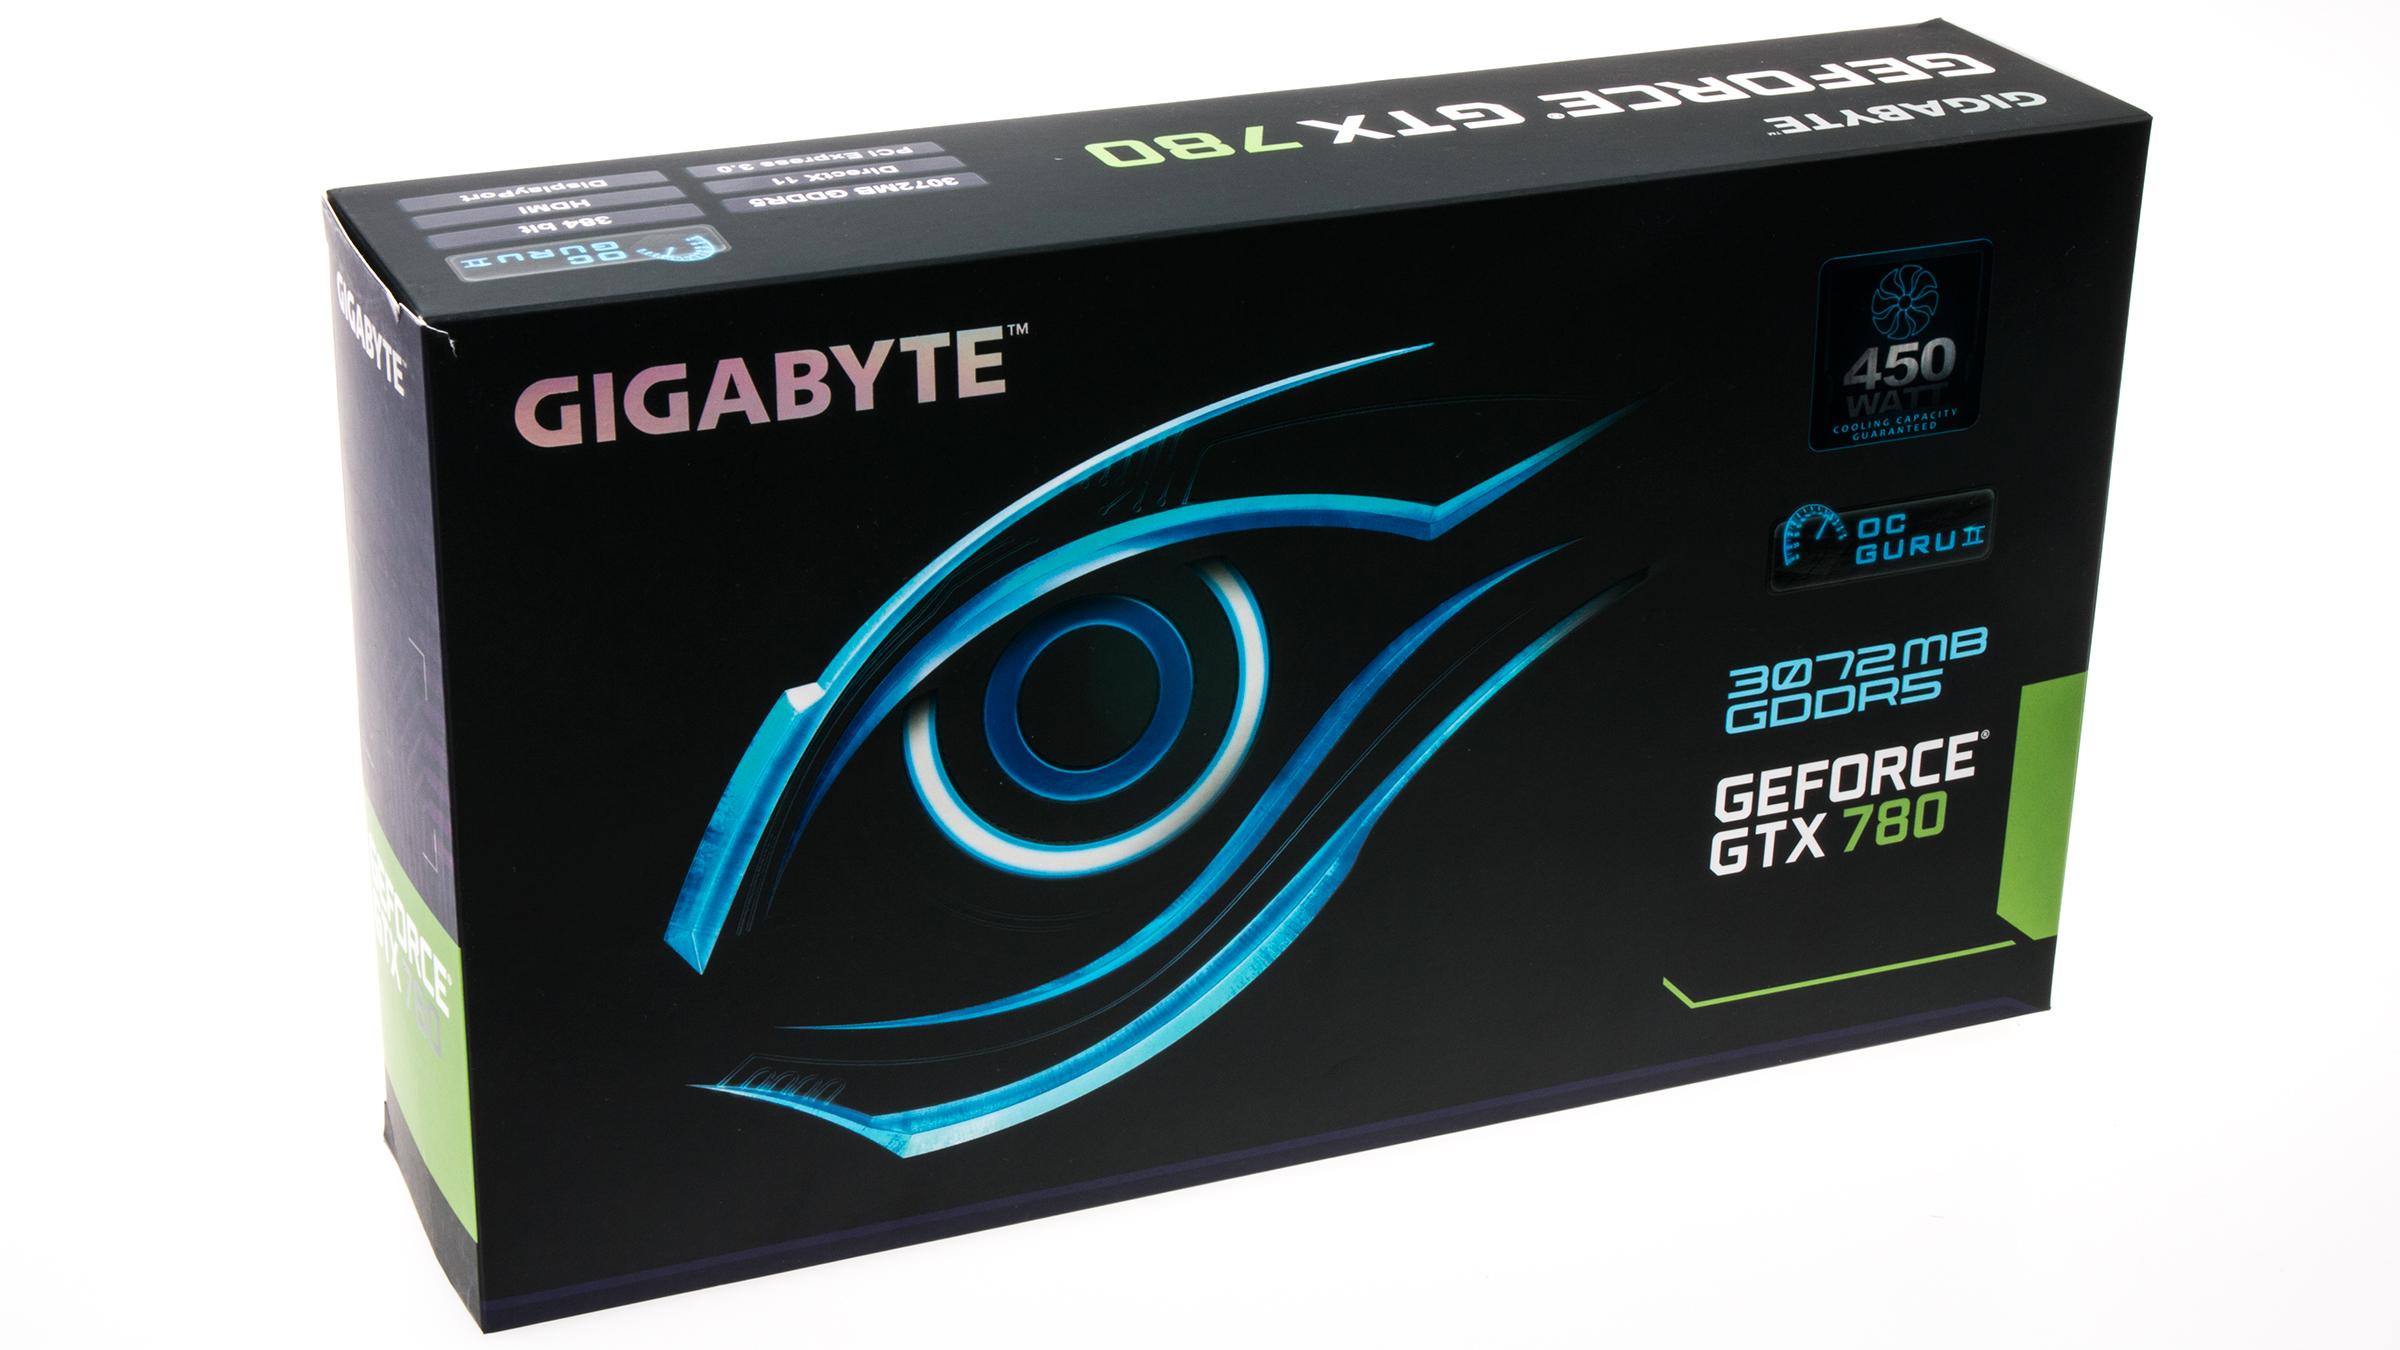 Gigabyte GeForce GTX 780 GHz Edition: Produkteske.Foto: Varg Aamo, Hardware.no